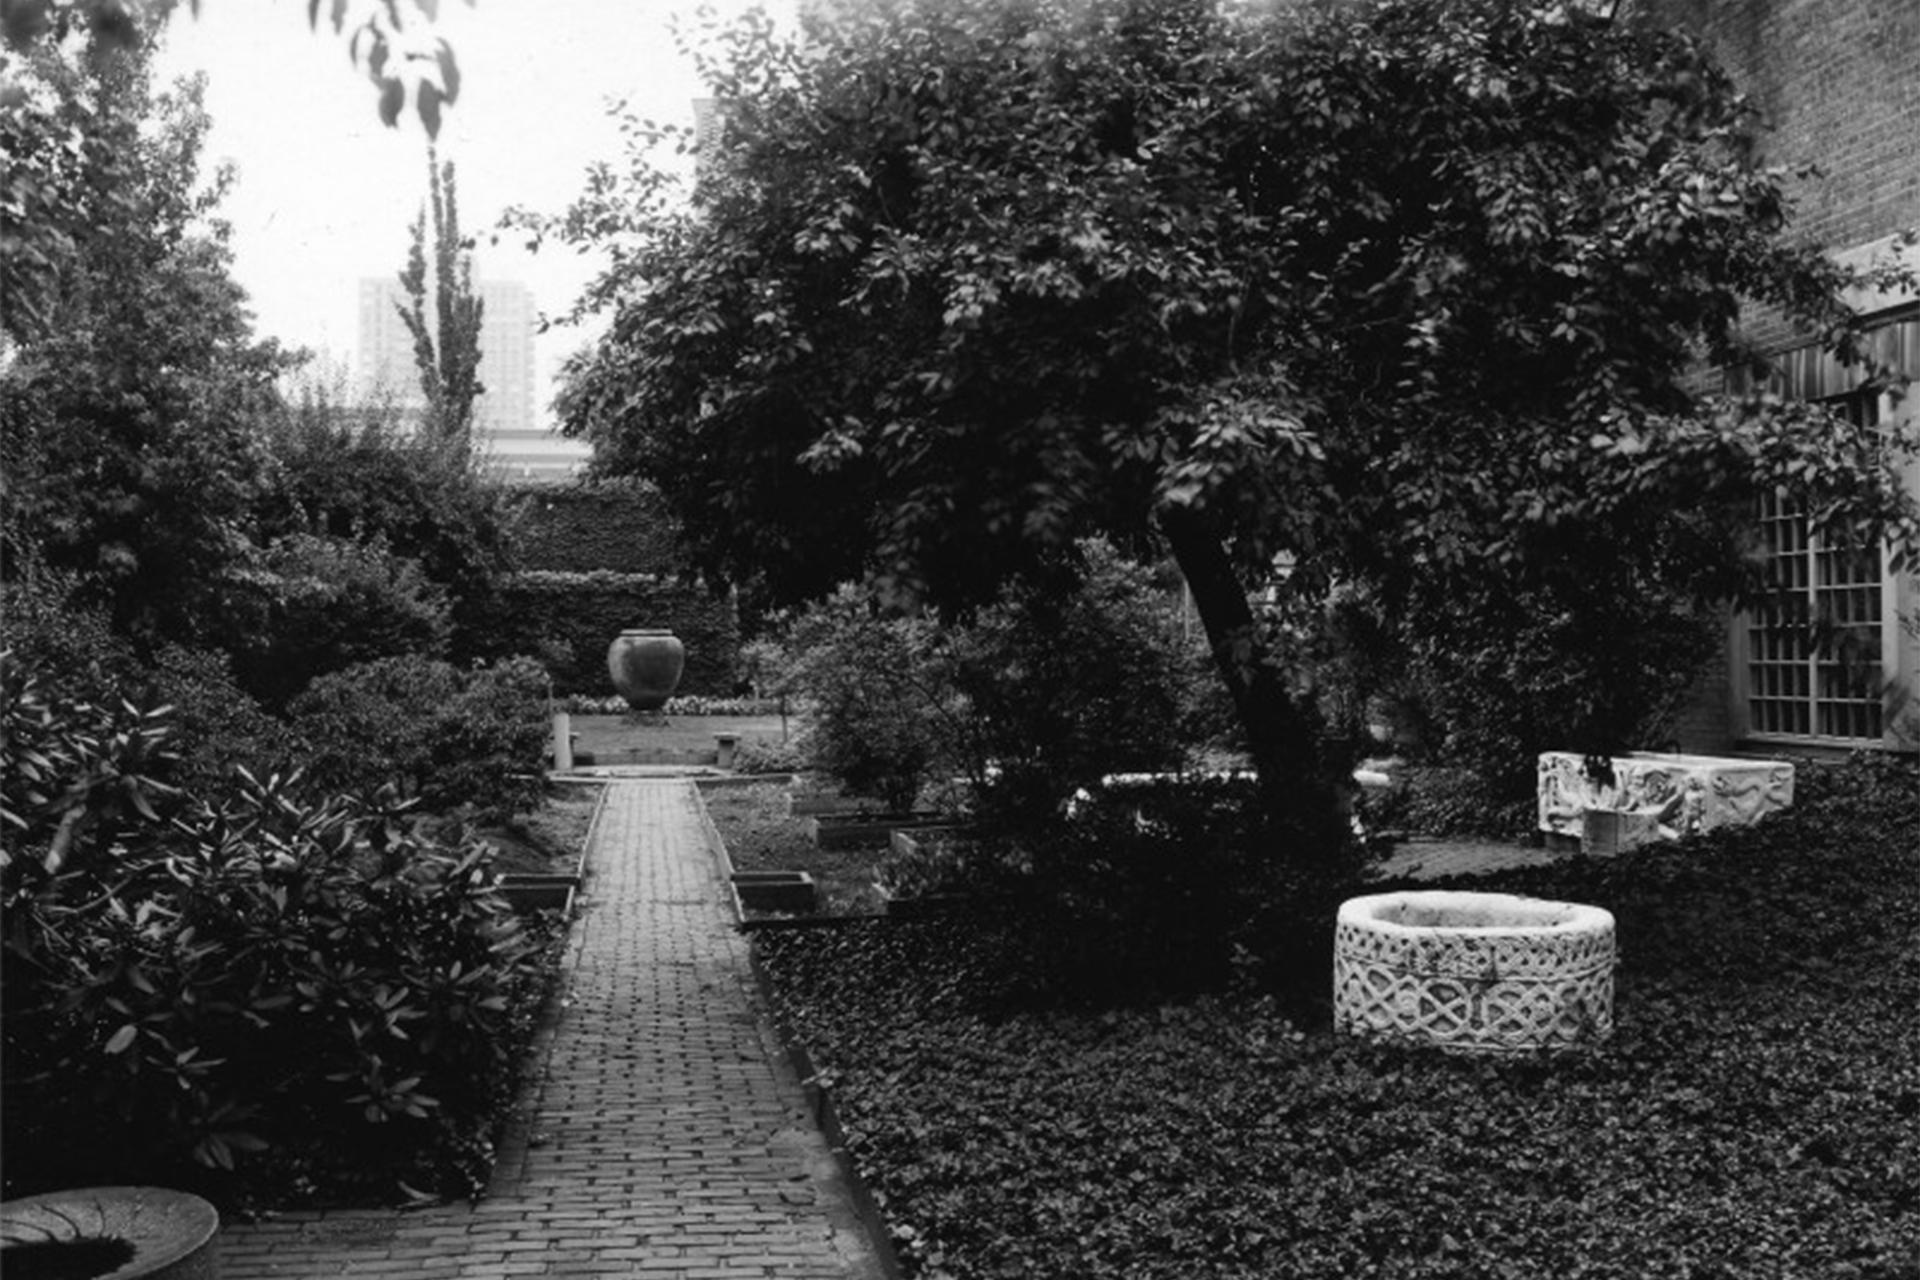 Exterior Monk's Garden at the Isabella Stewart Gardner Museum.